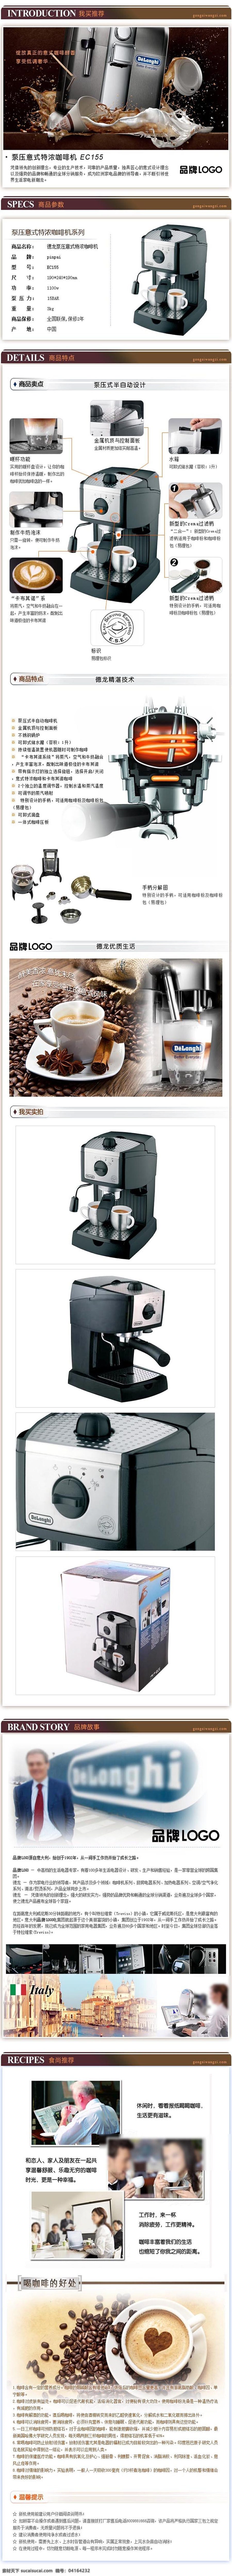 咖啡机 机器 防盗锁描述 产品详情页 实用详情页 详情页设计 淘宝描述 淘宝详情页 淘宝界面设计 白色